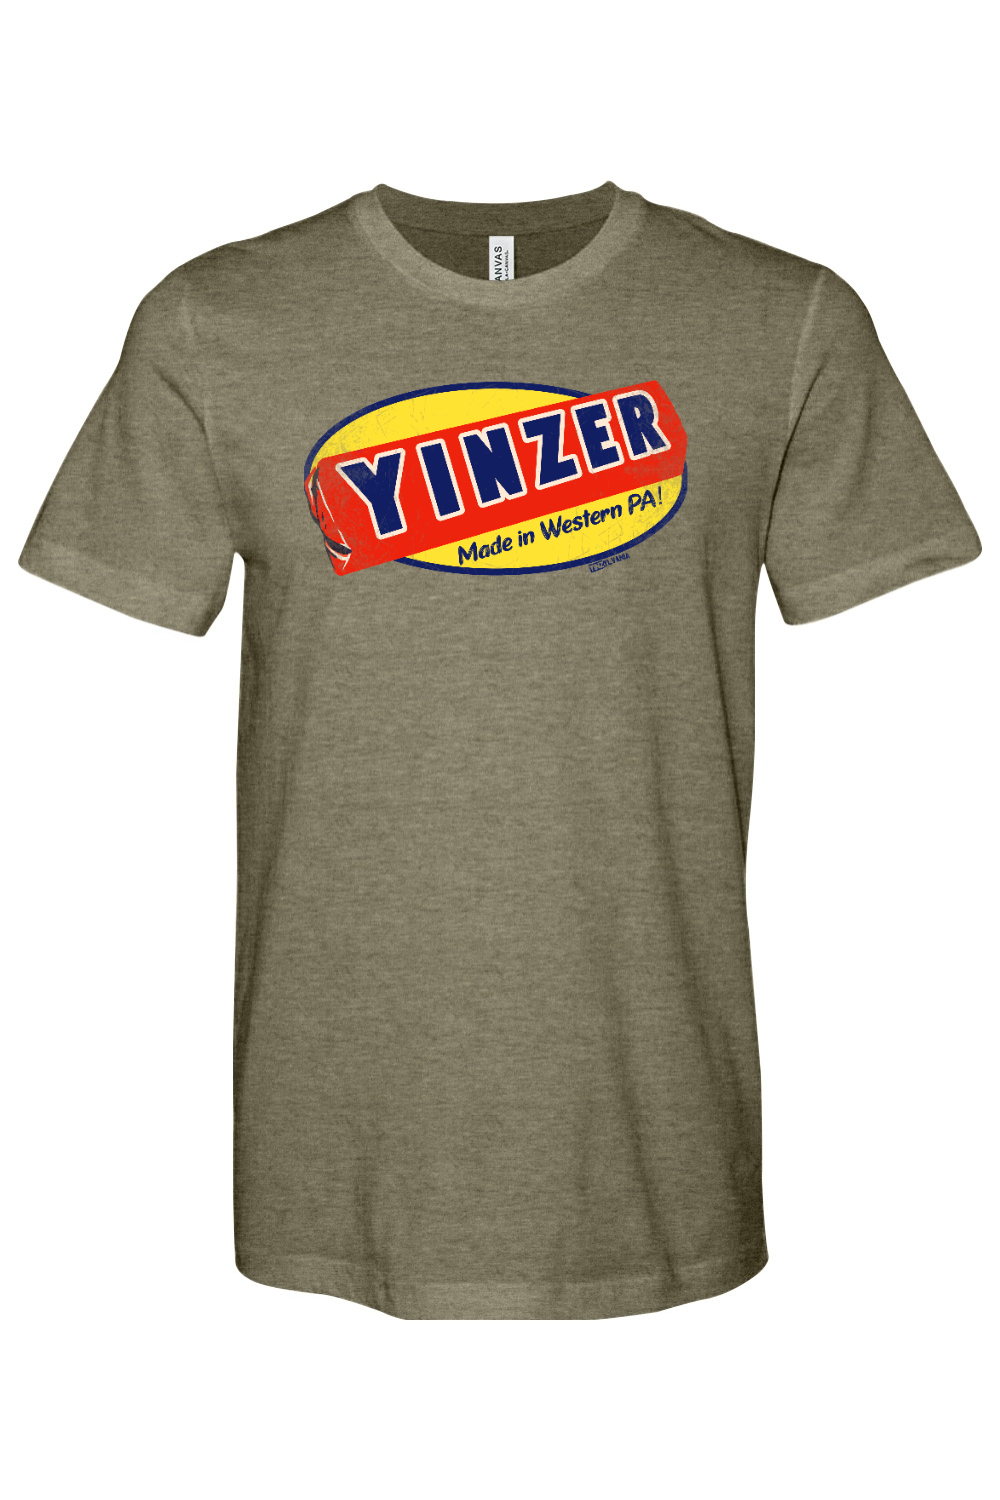 Yinzer Candy Bar - Yinzylvania